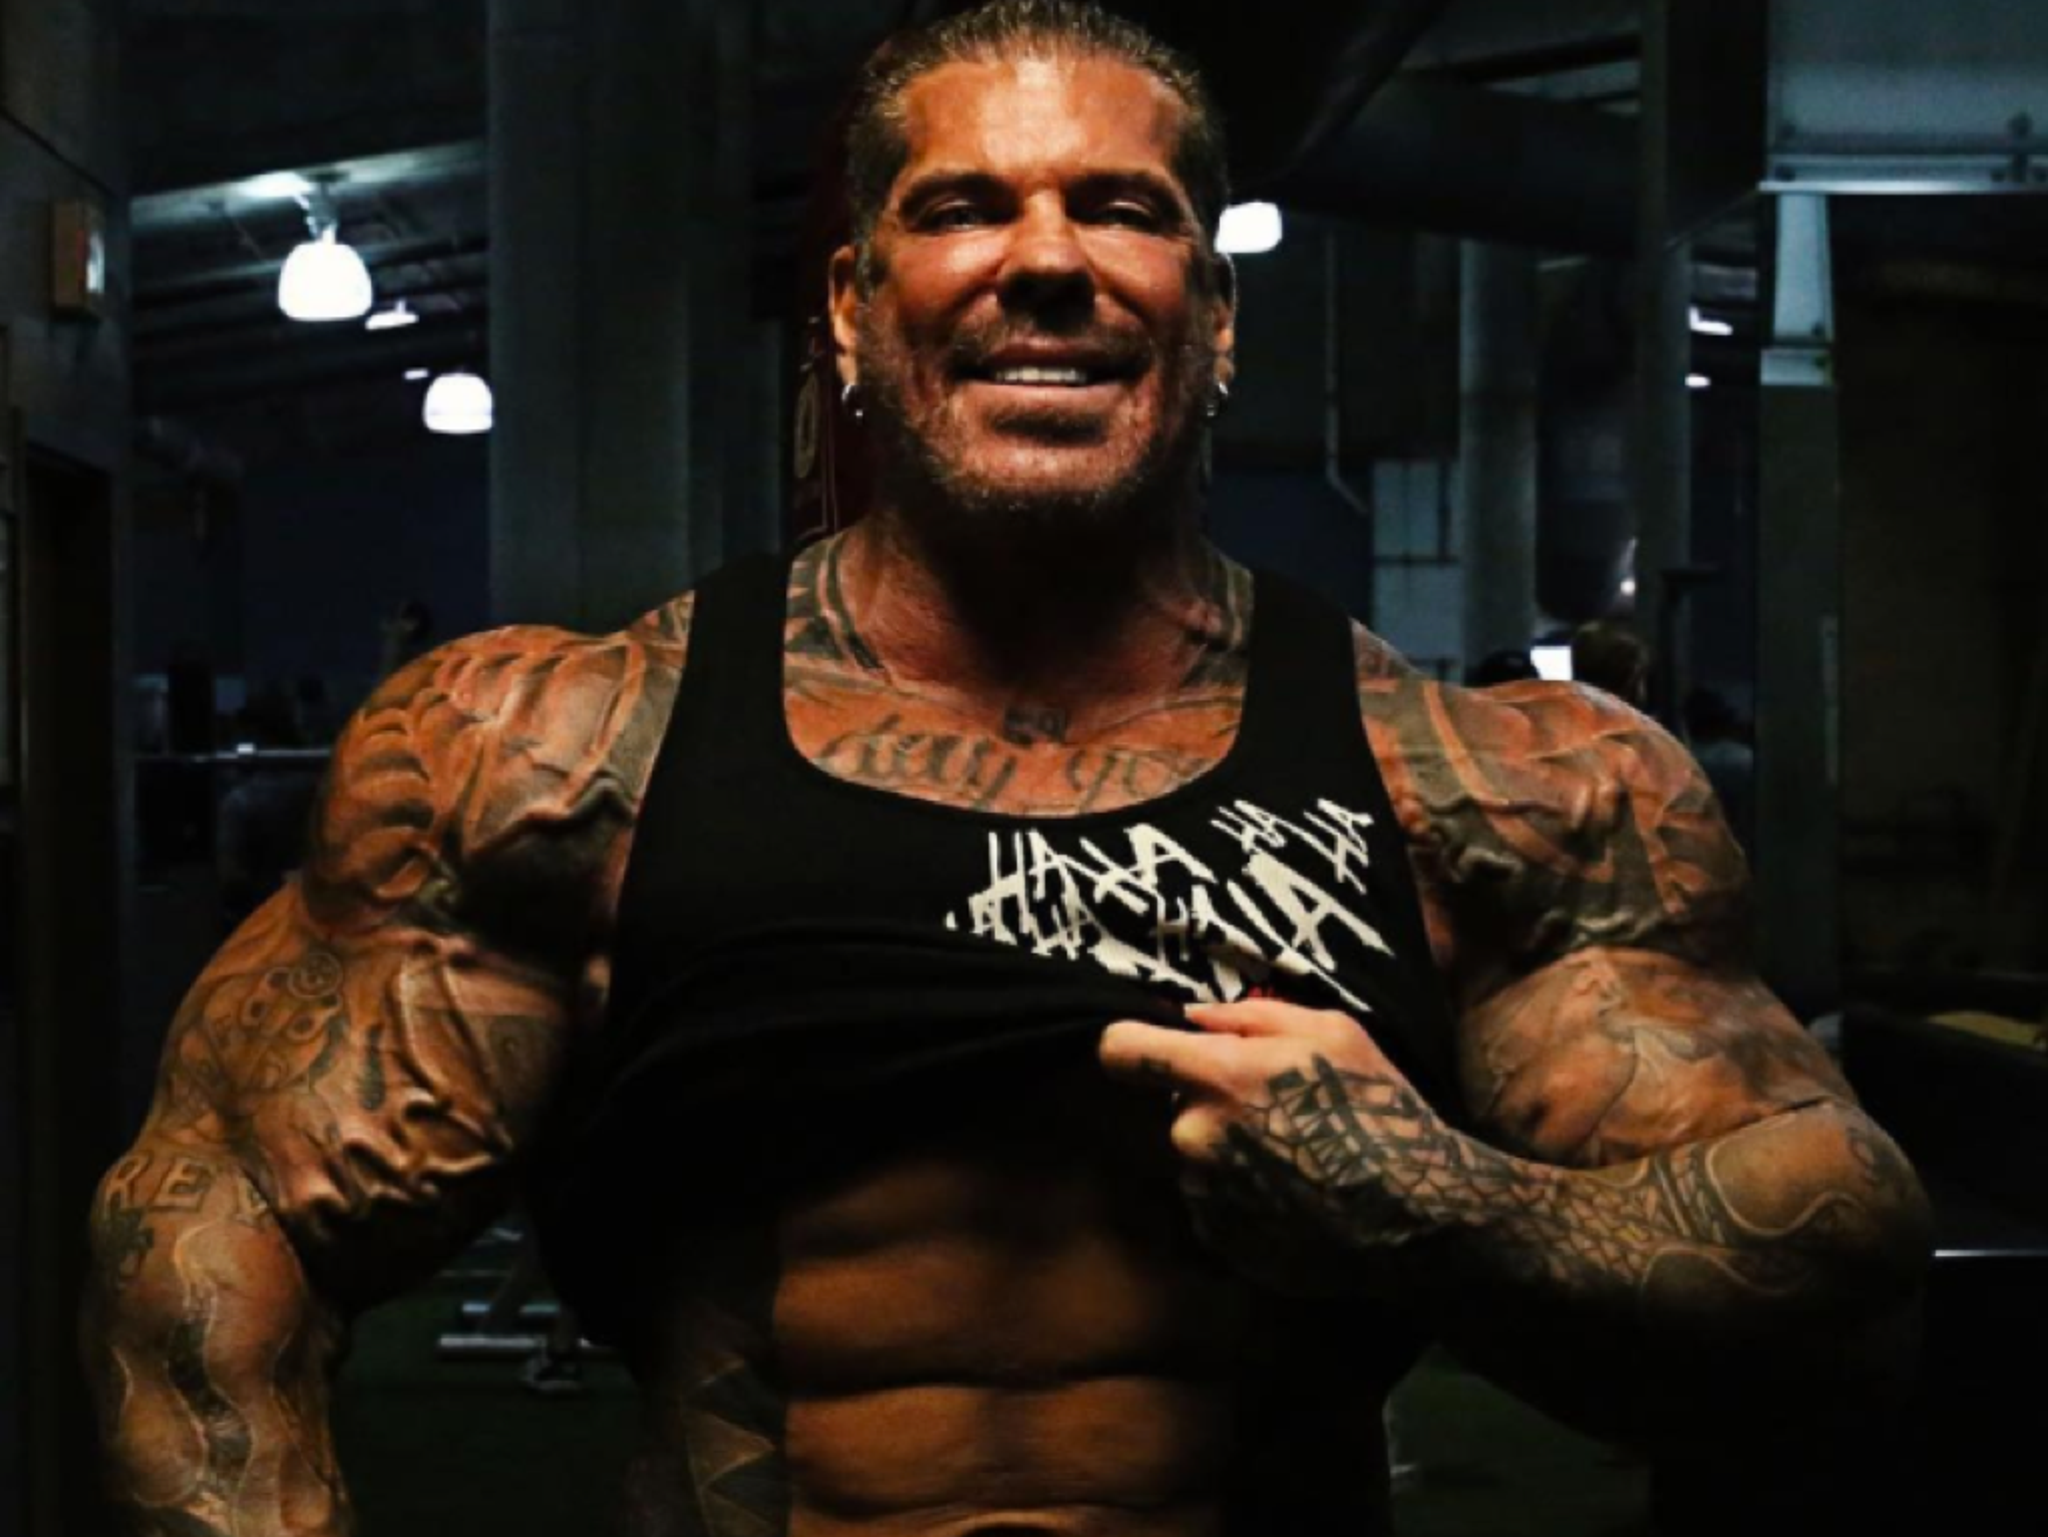 Bodybuilder Rich Piana Snorted Workout Powder, Death Investigation Reveals